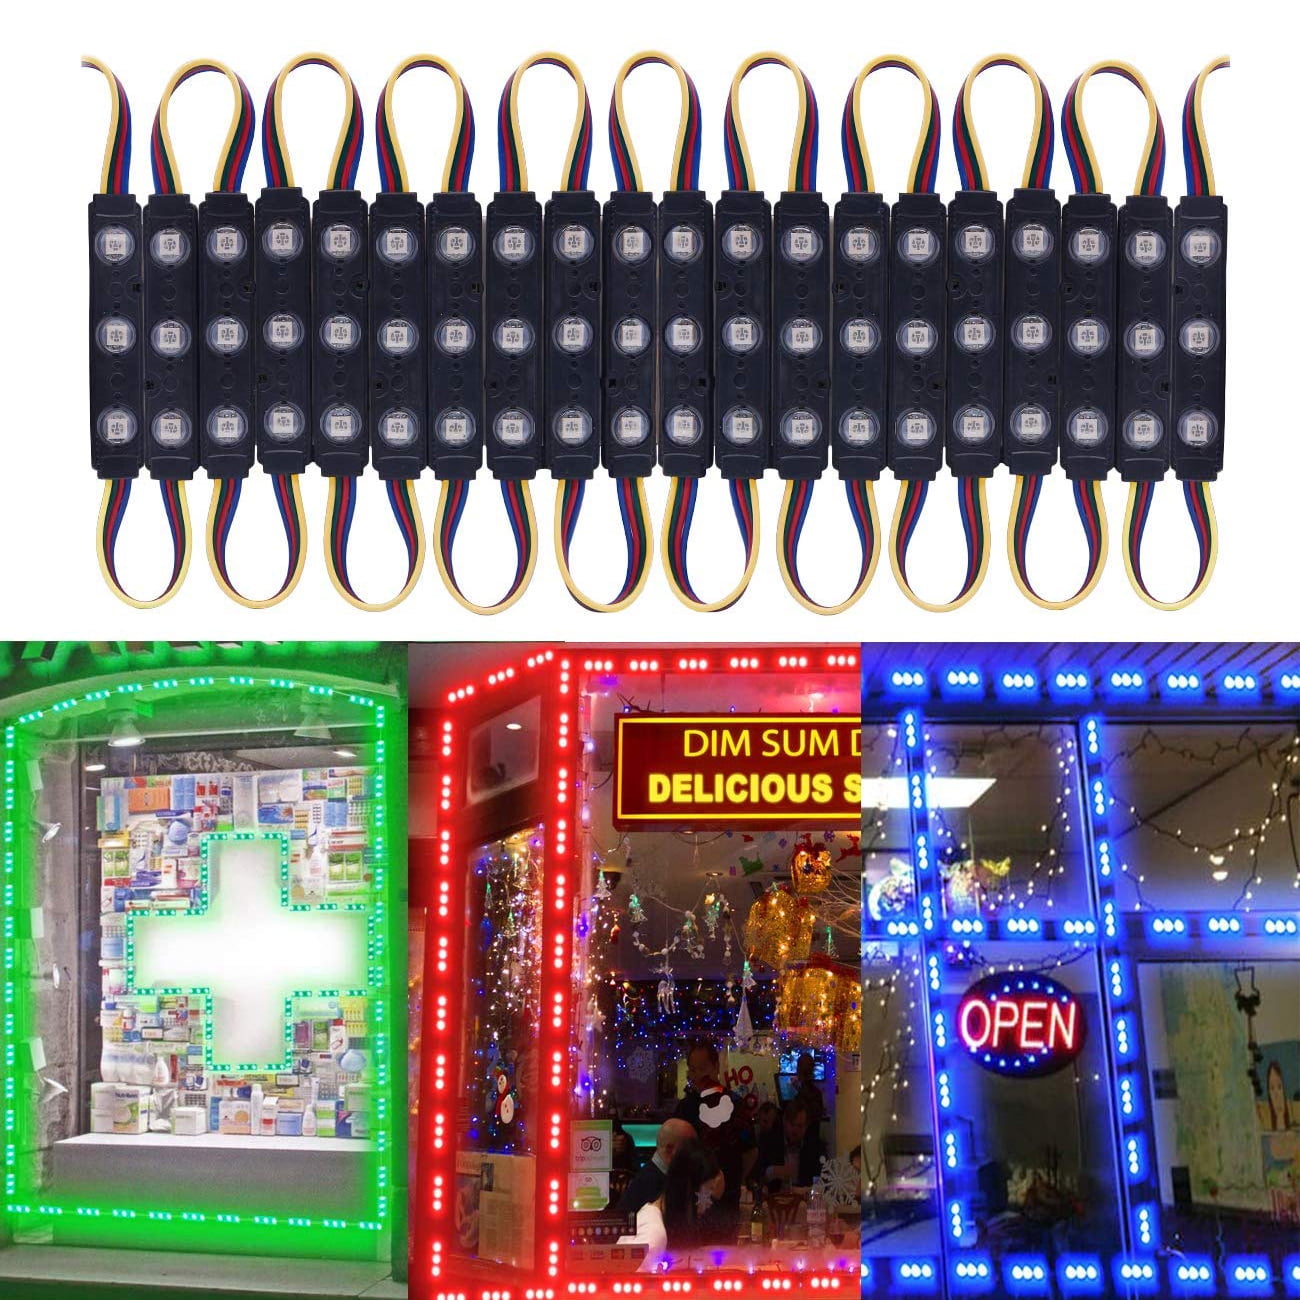 LED Light Modules Online Store